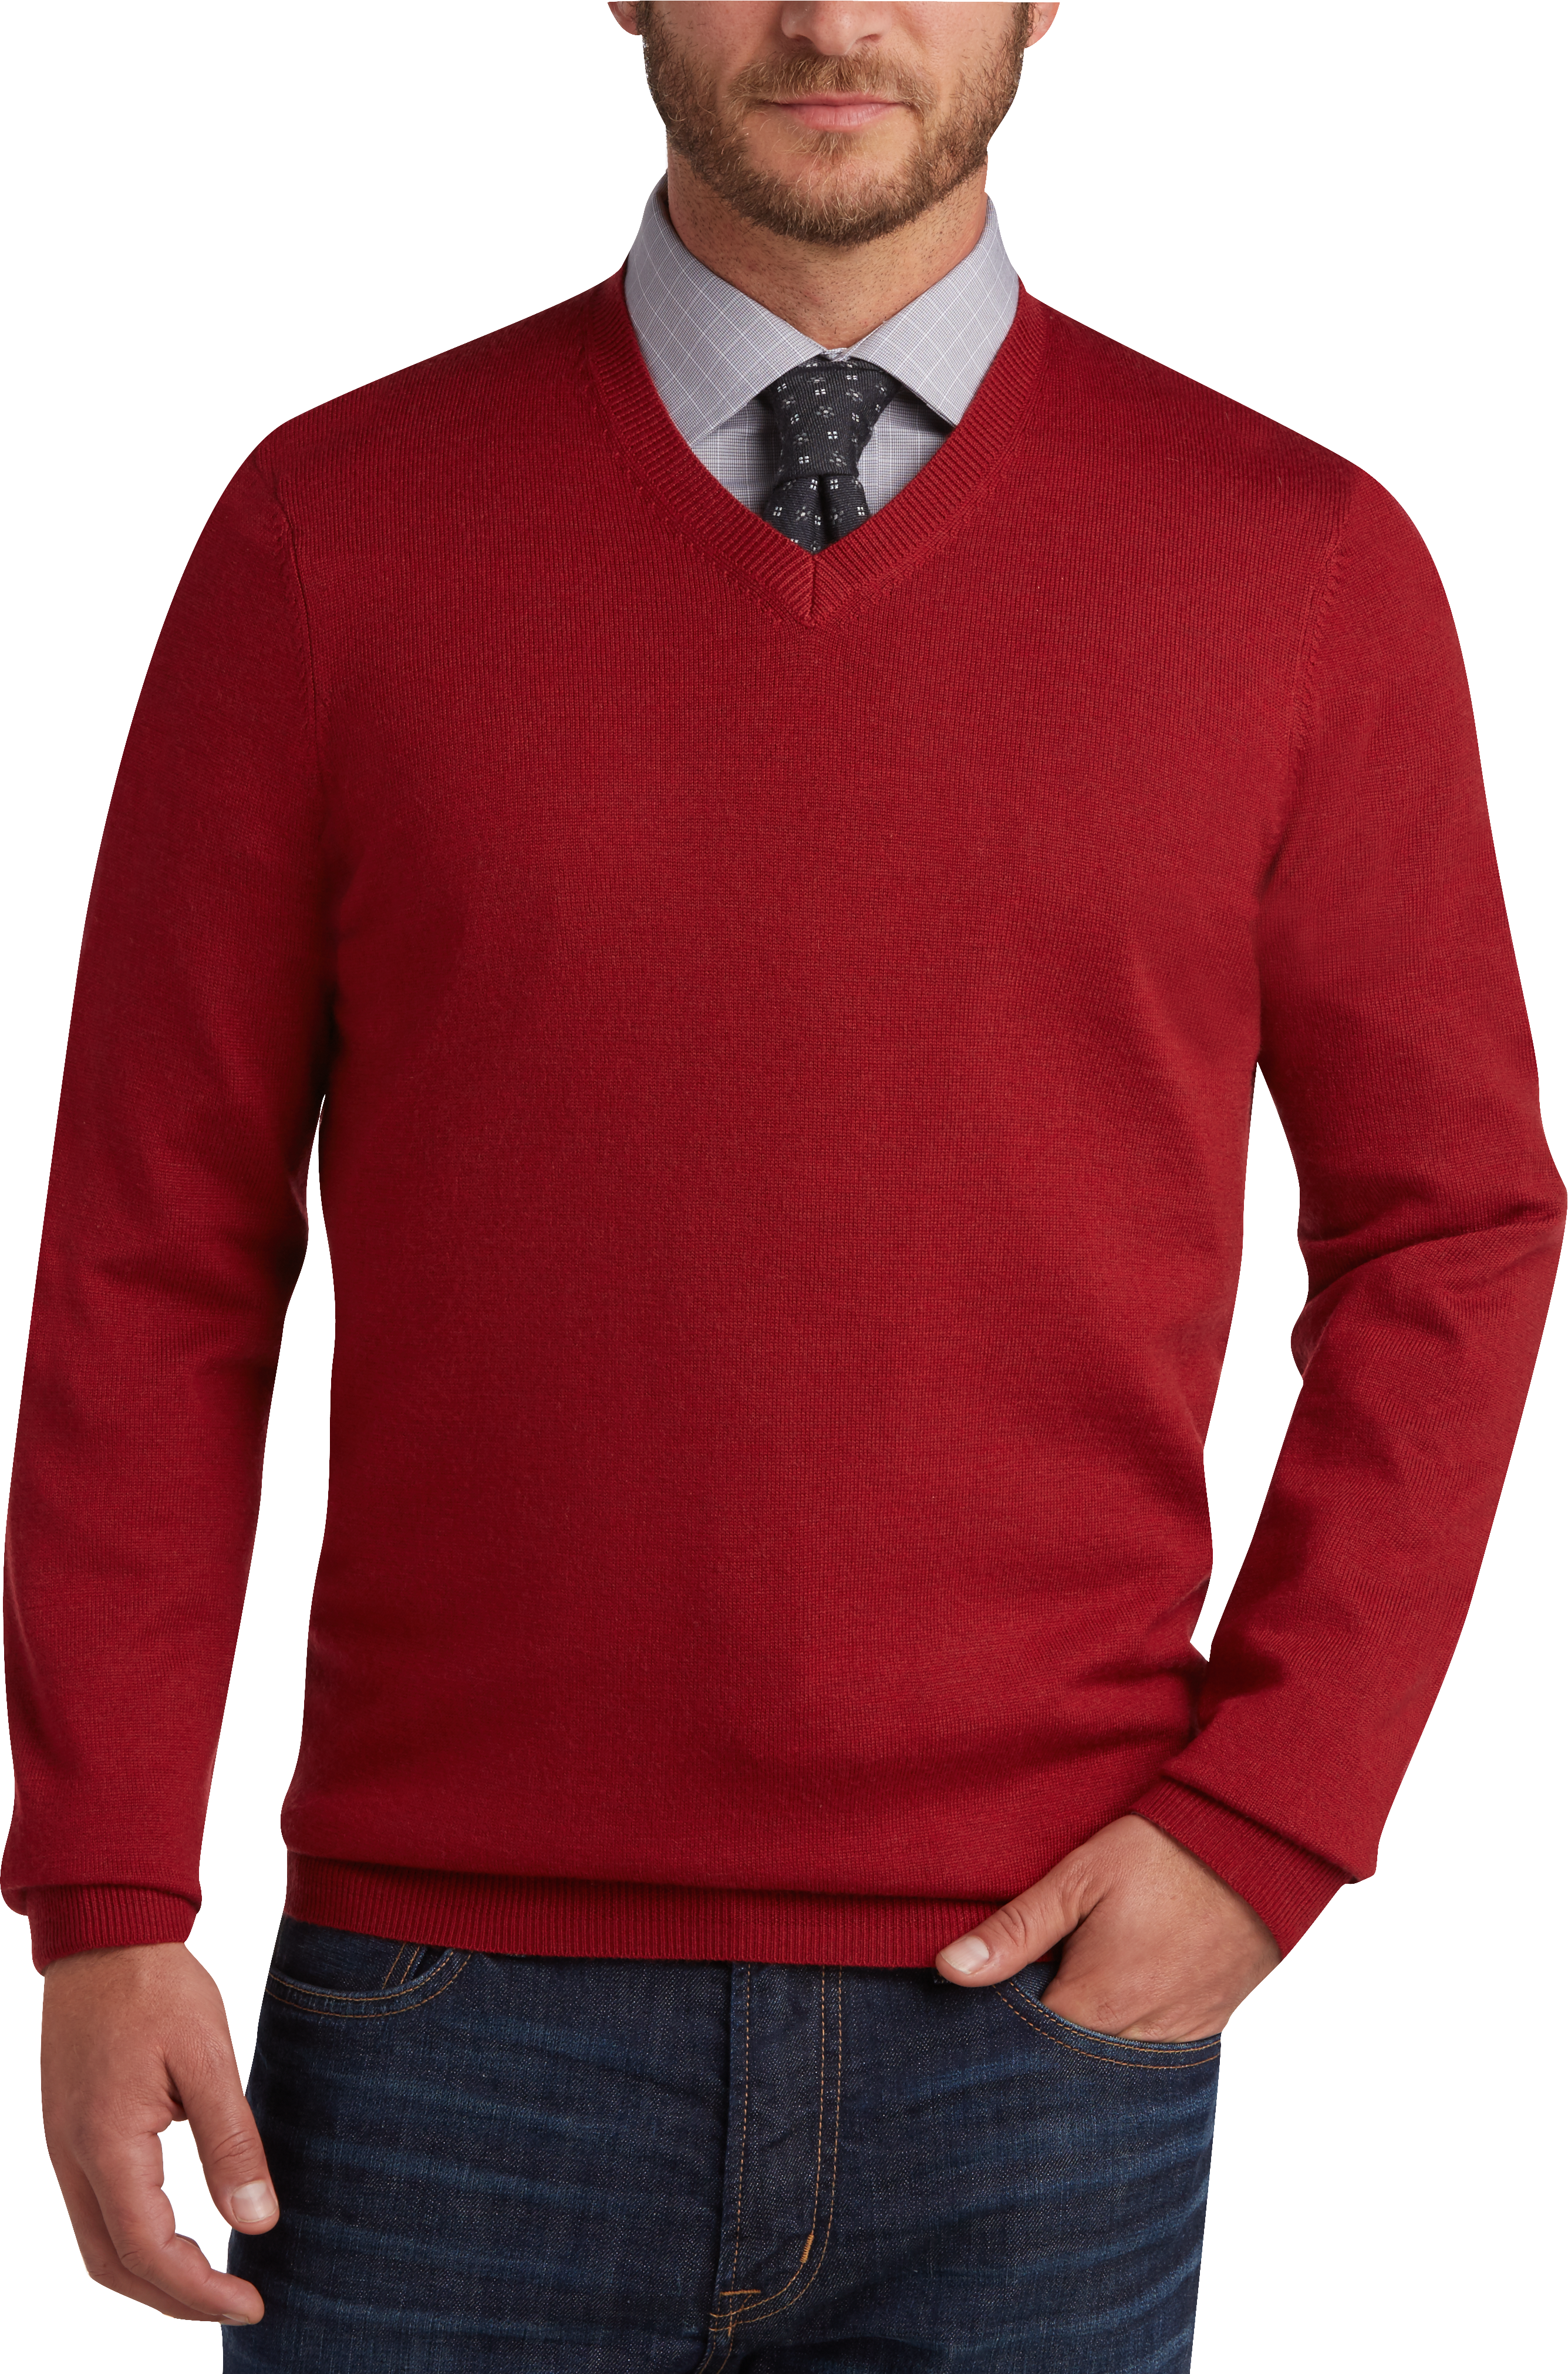 Joseph Abboud Red Apple V-Neck Merino Wool Sweater - Men's Sale | Men's ...